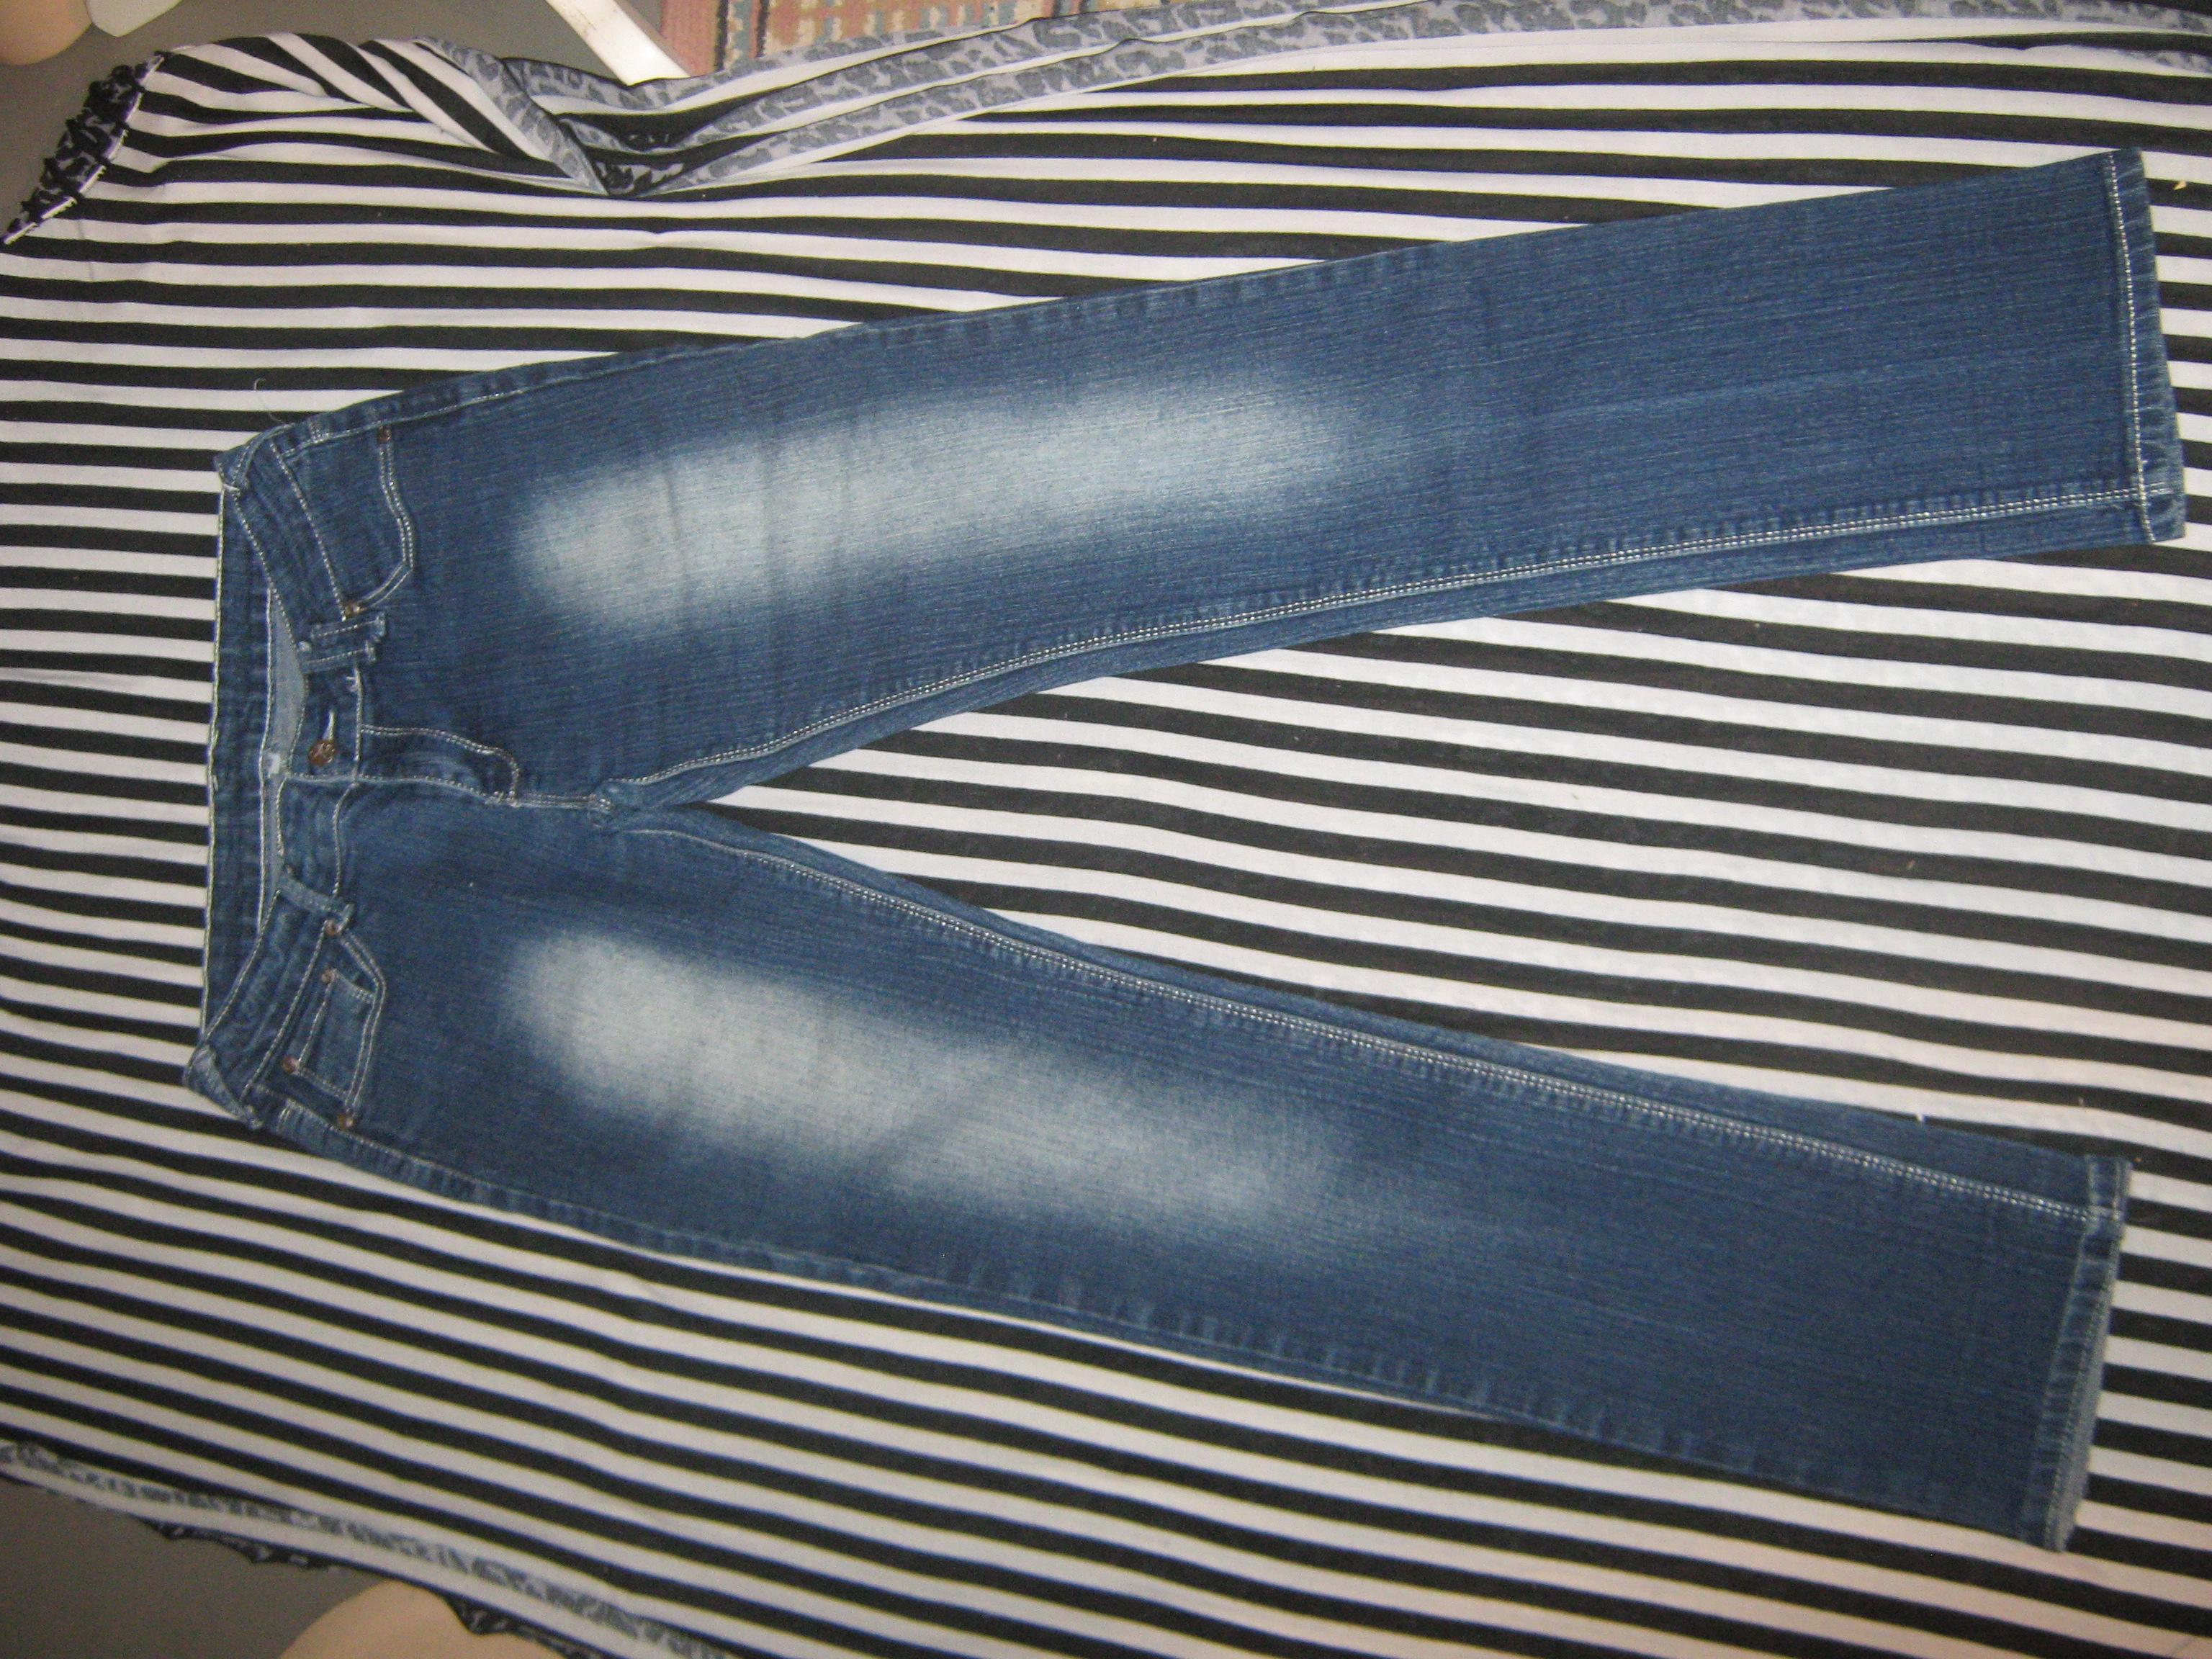 troc de troc jeans image 0